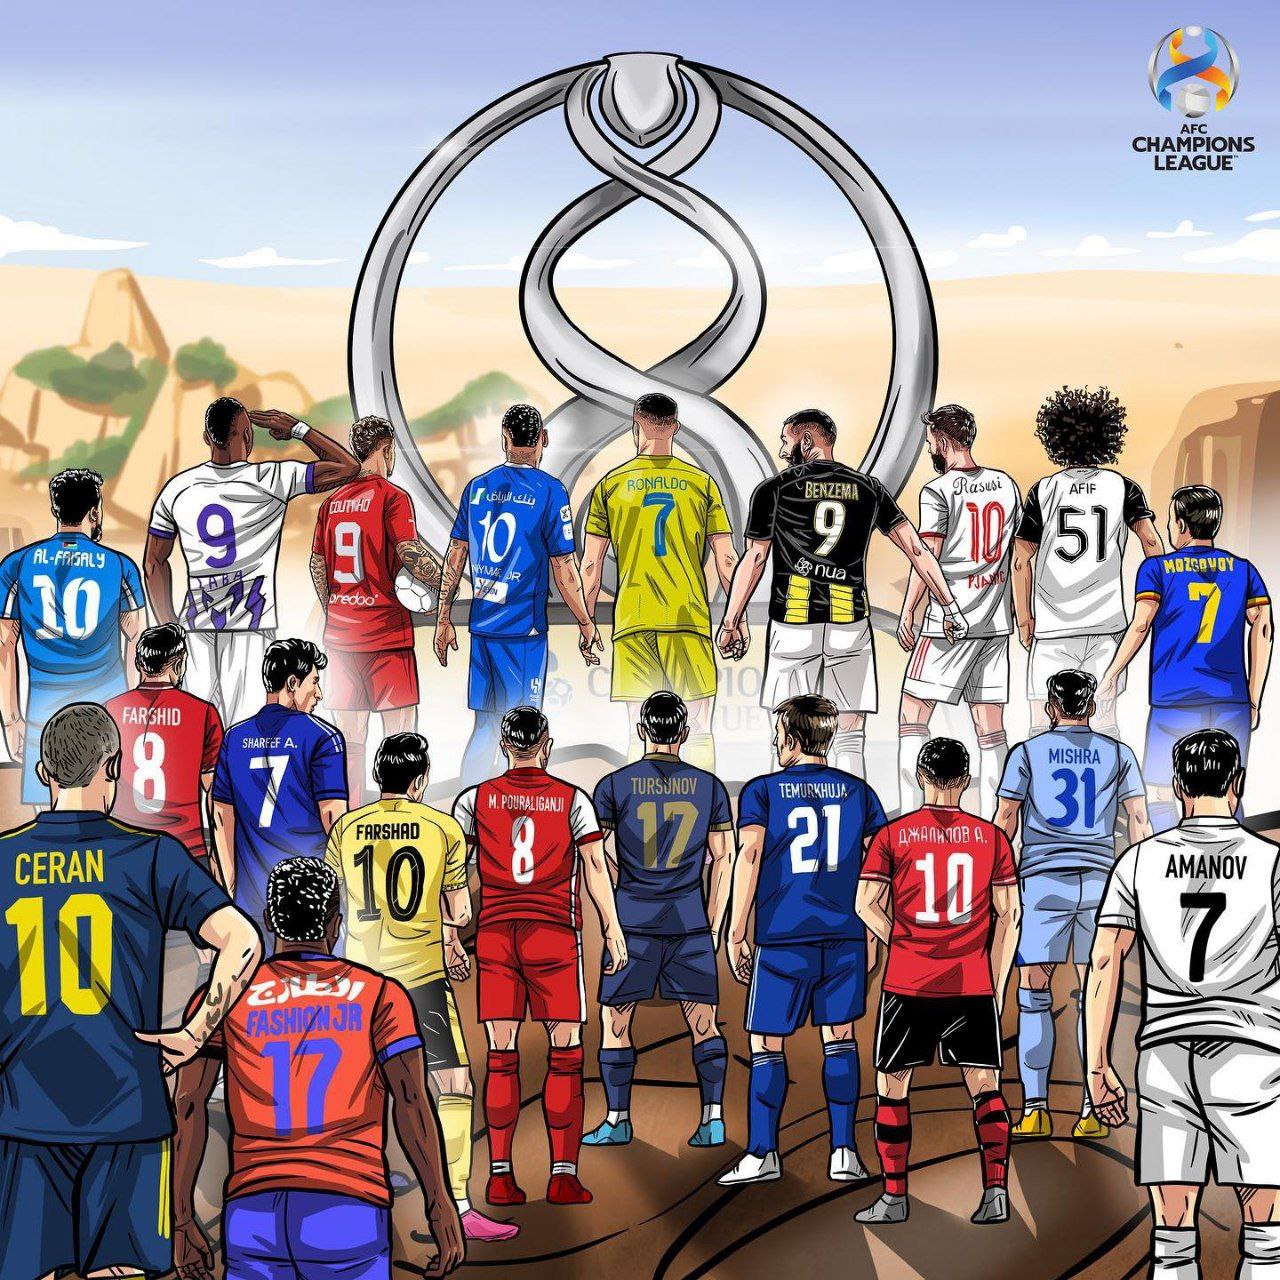 3 ایرانی در پوستر جدید لیگ قهرمانان آسیا